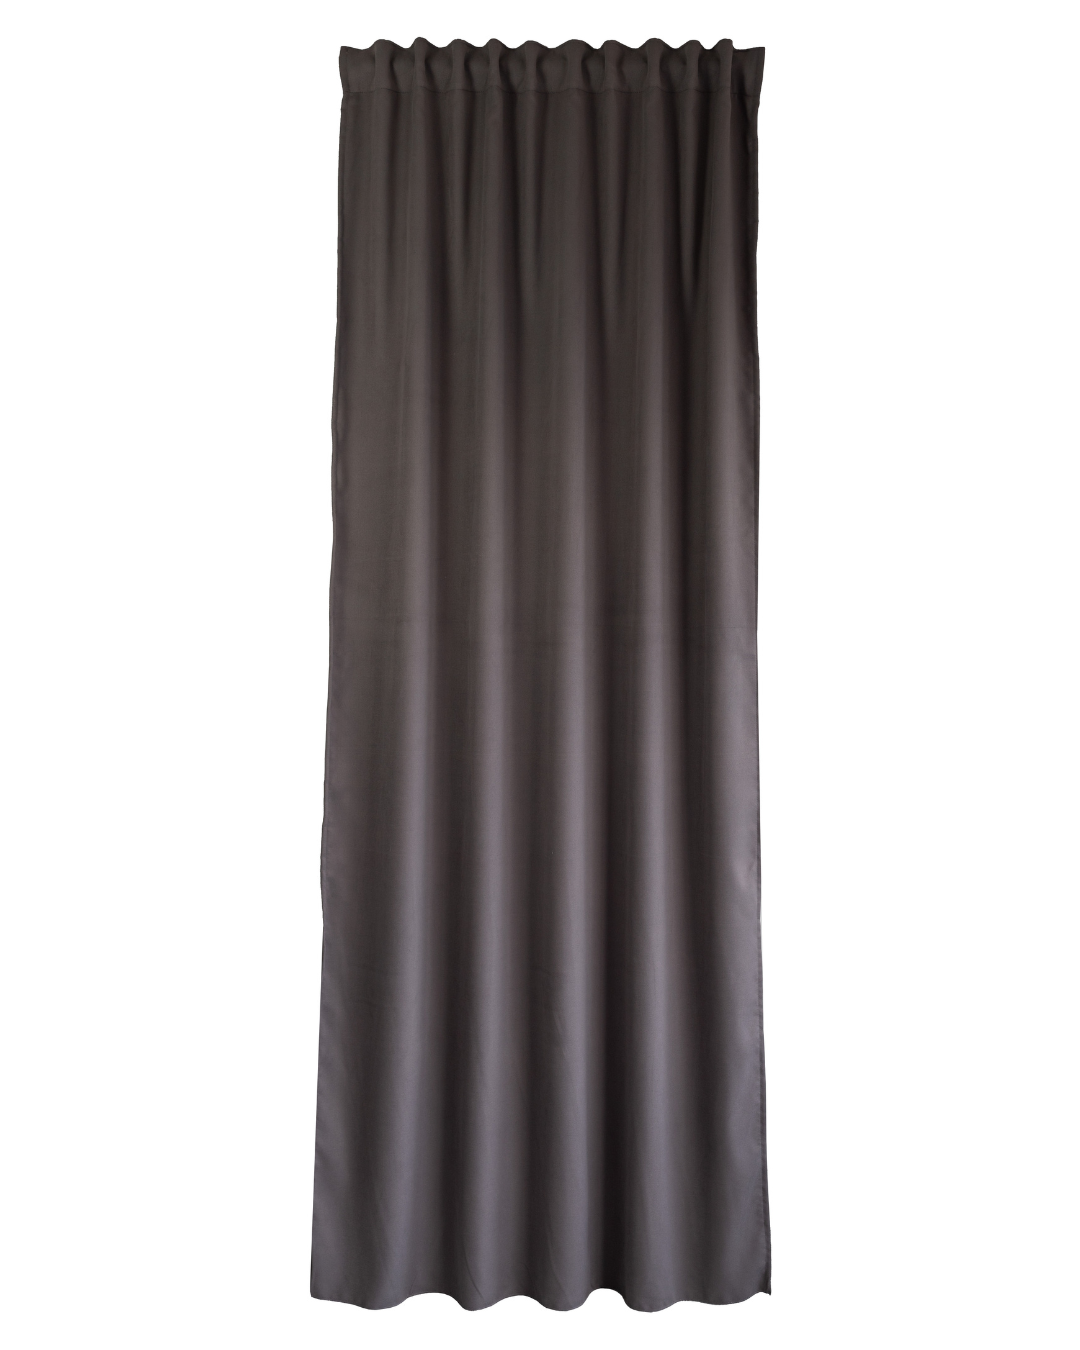 Cortina opaca acústica belice con motivo liso marrón de 270x140 cm